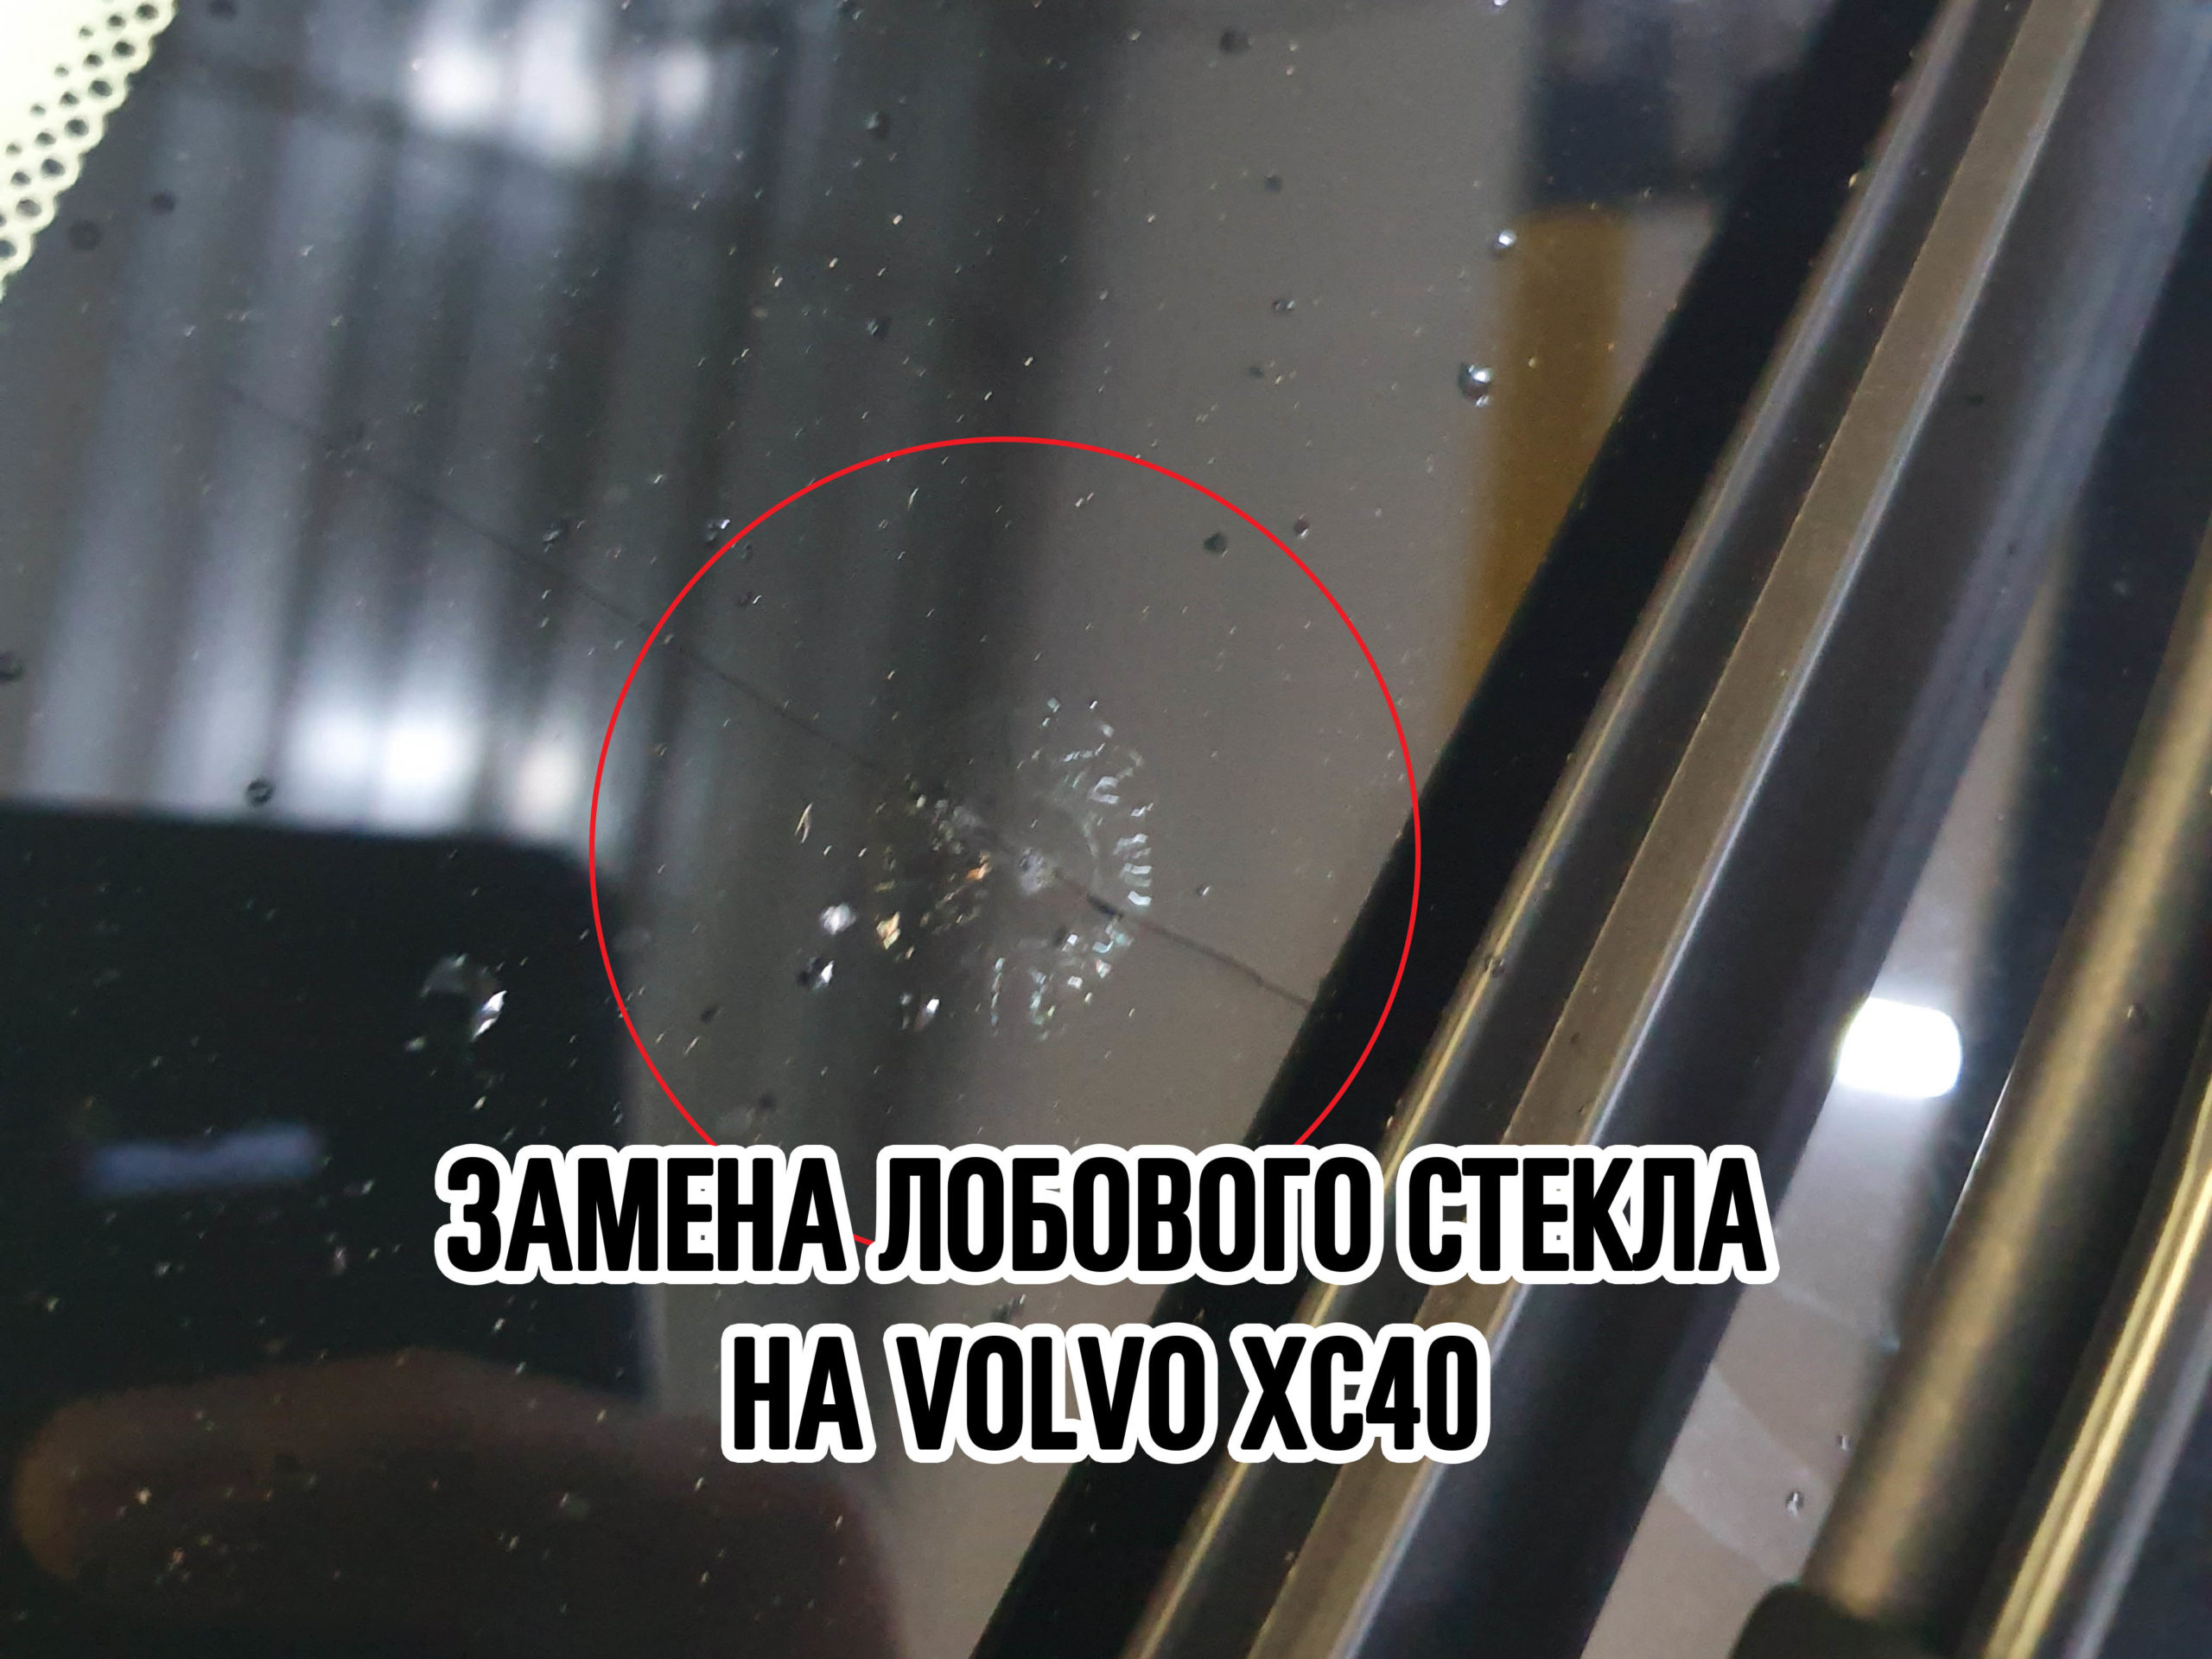 Лобовое стекло на Volvo XC40 купить и установить в Москве